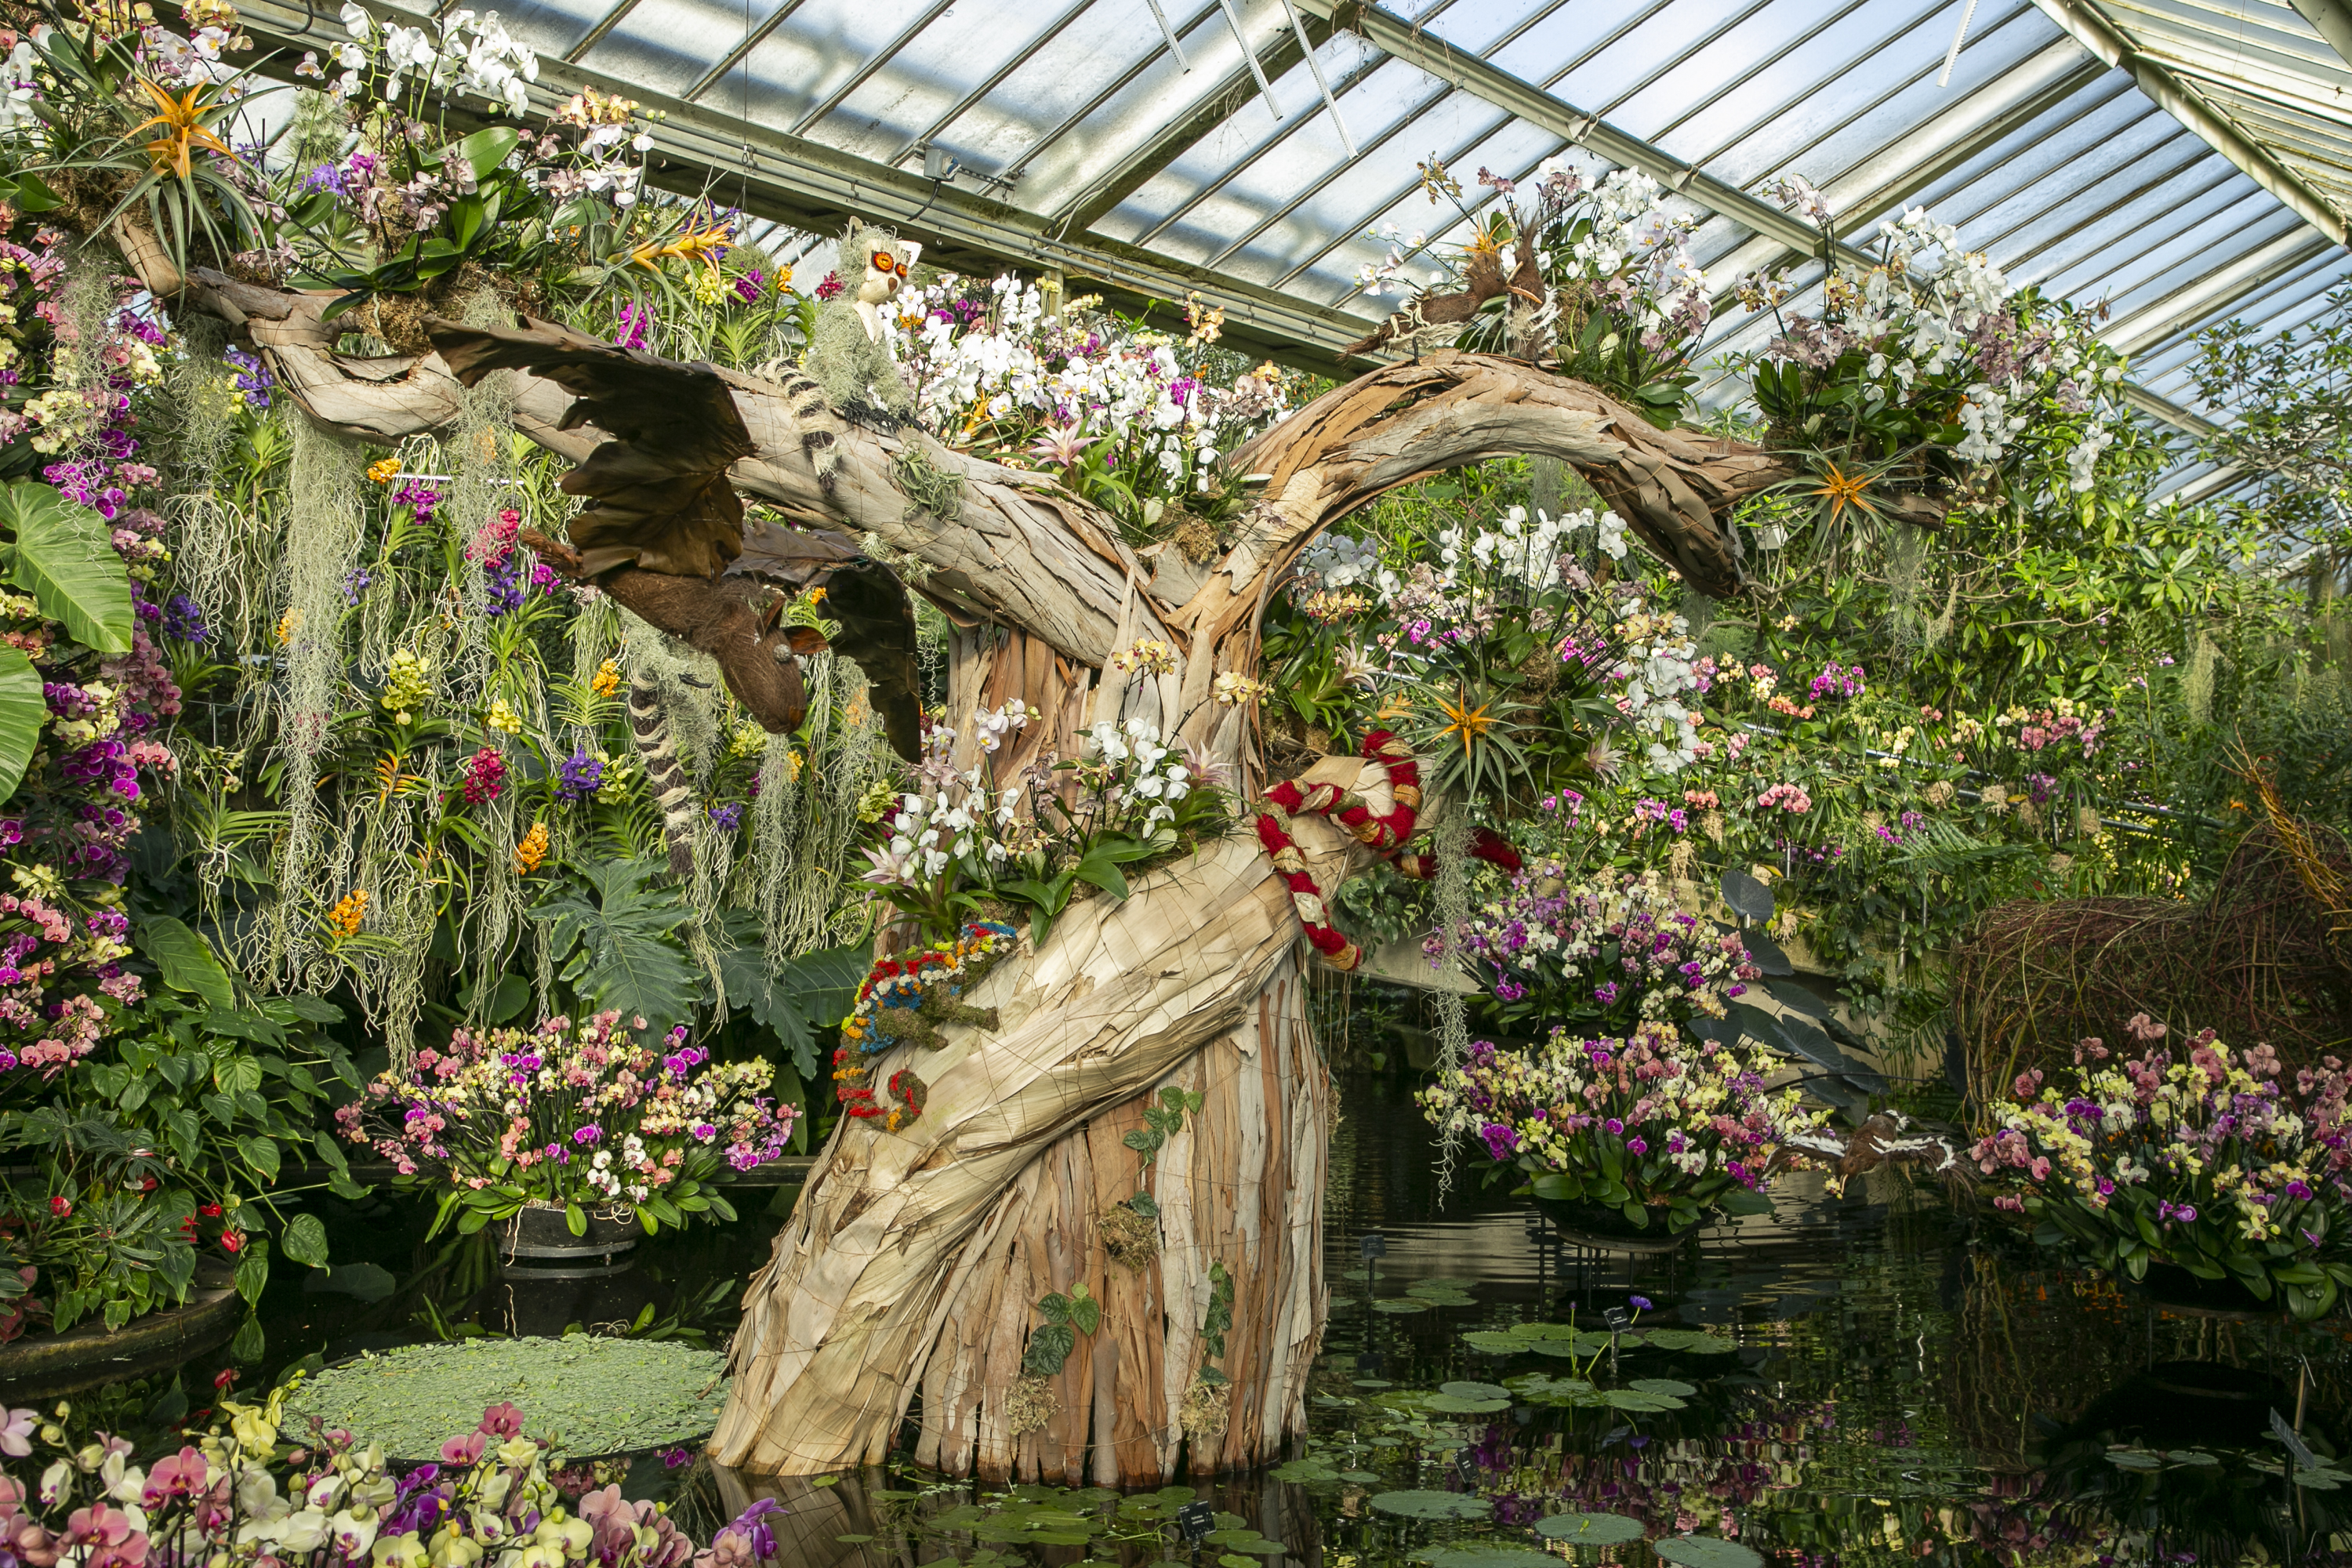 Das Orchideenfestival in Kew ist absolut fantastisch und einen Besuch wert.